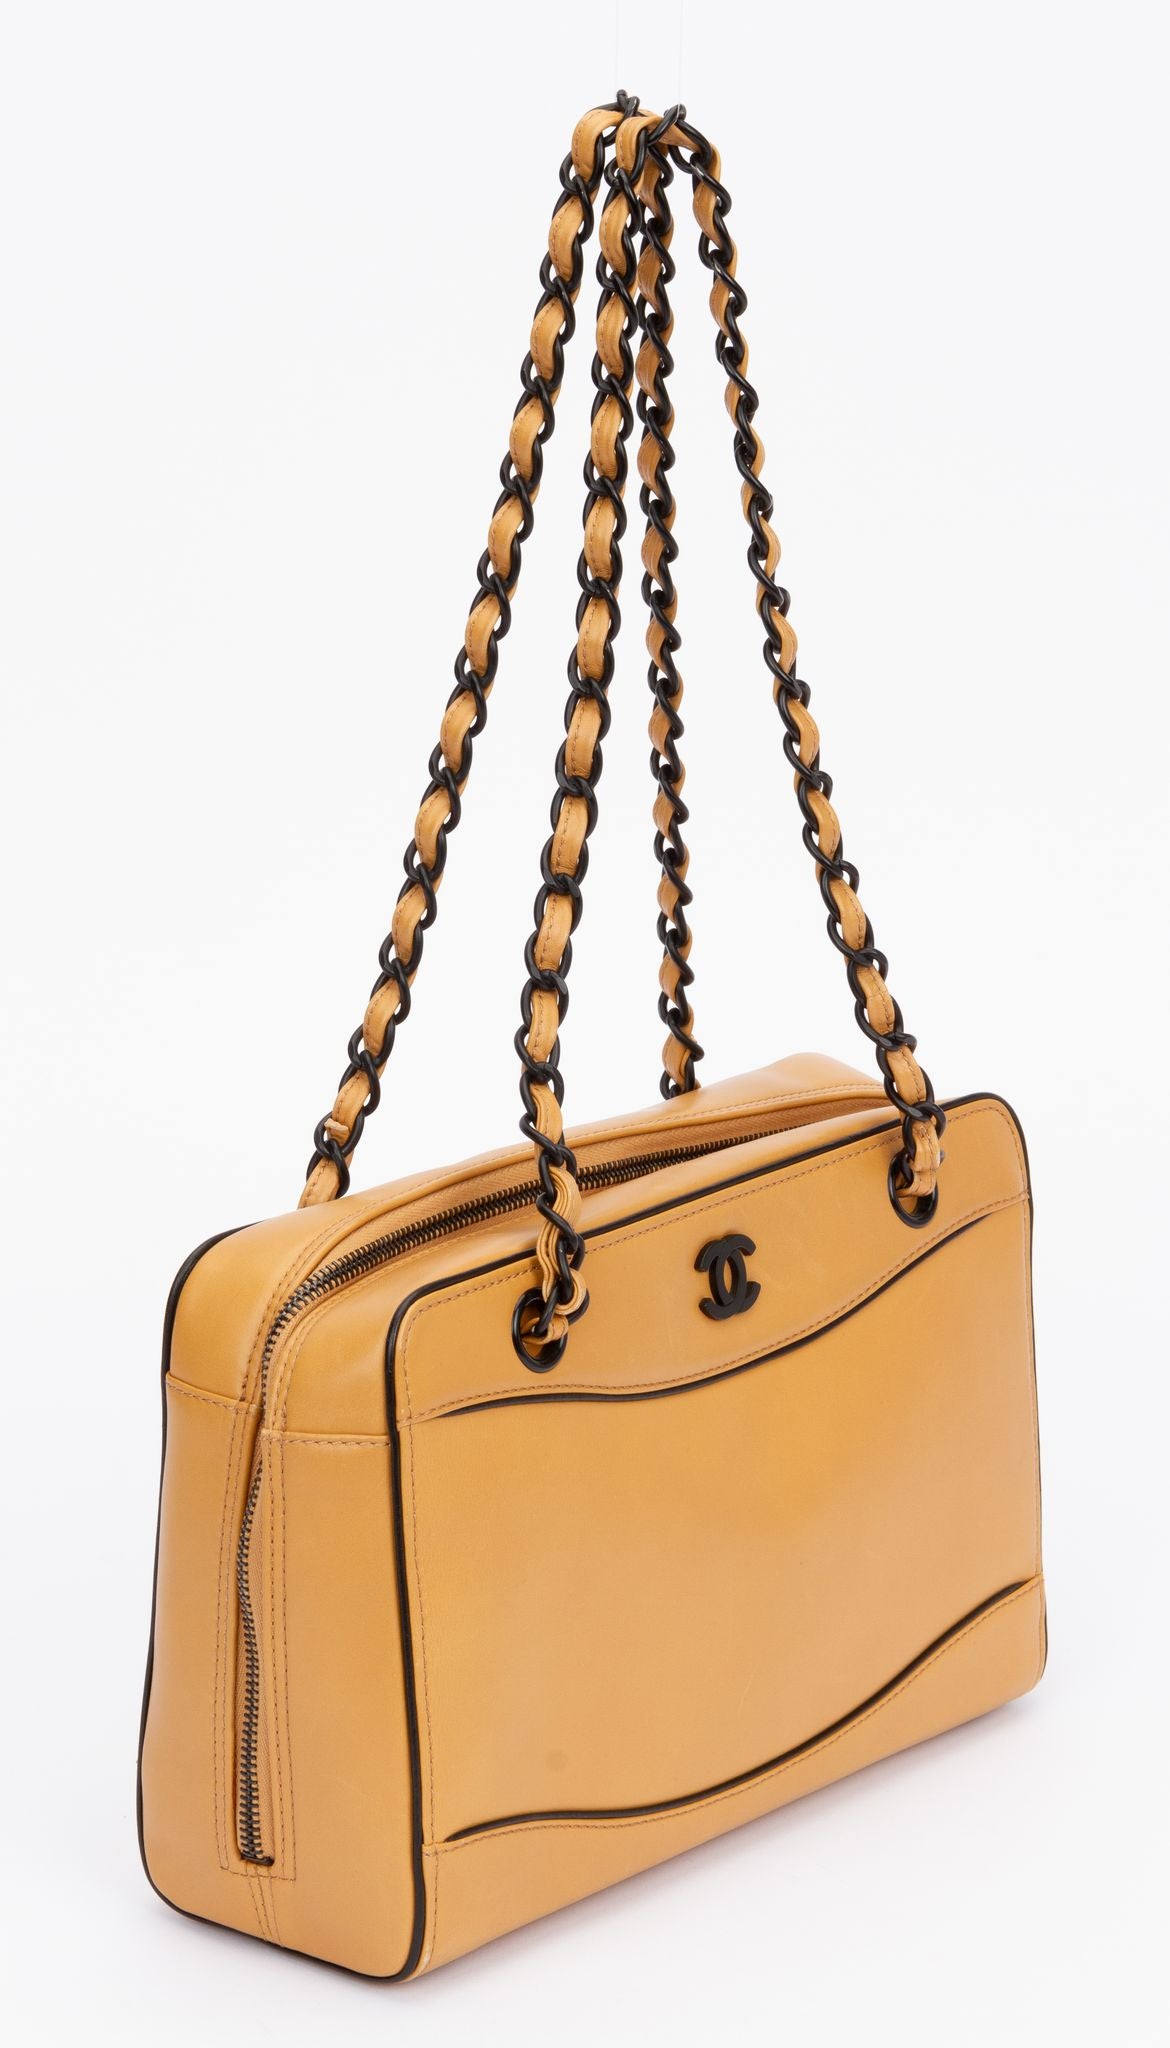 Chanel Brushed Calf Medium Vintage Bag - Vintage Lux